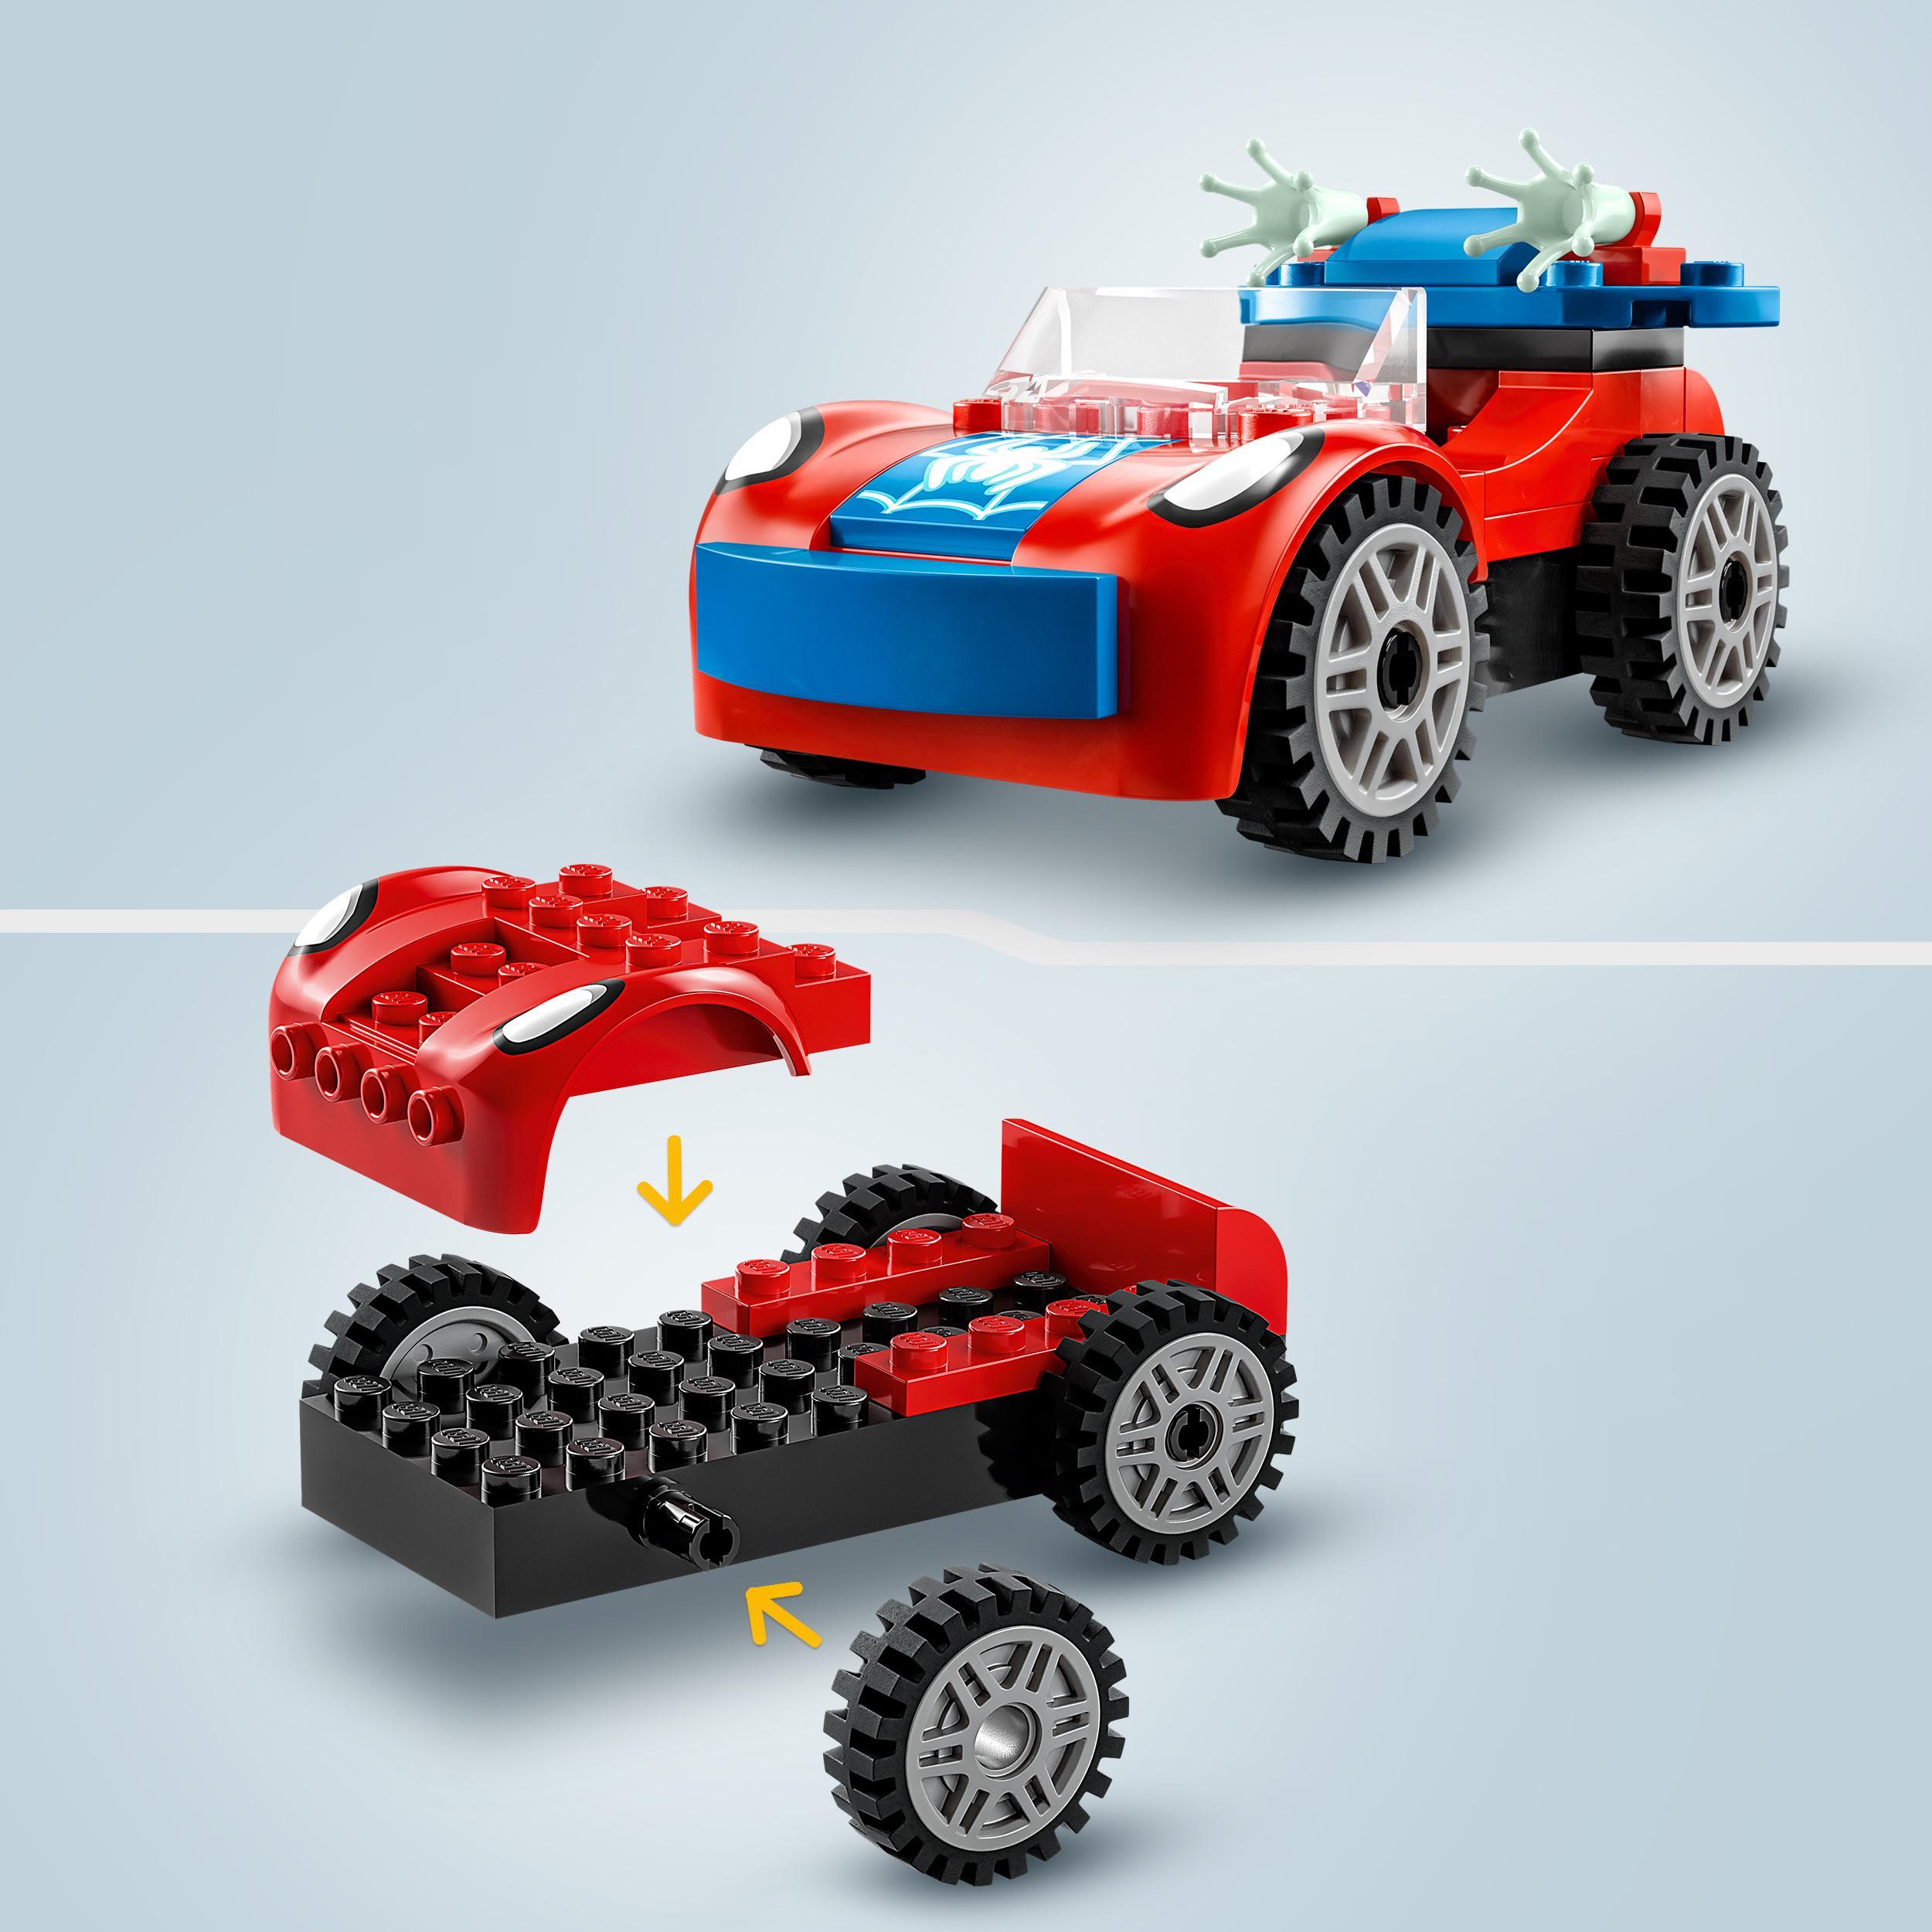 Lego marvel 10789 l’auto di spider-man e doc ock, macchina giocattolo di spidey e i suoi fantastici amici, giochi per bambini 4+ - LEGO SUPER HEROES, Avengers, Spiderman